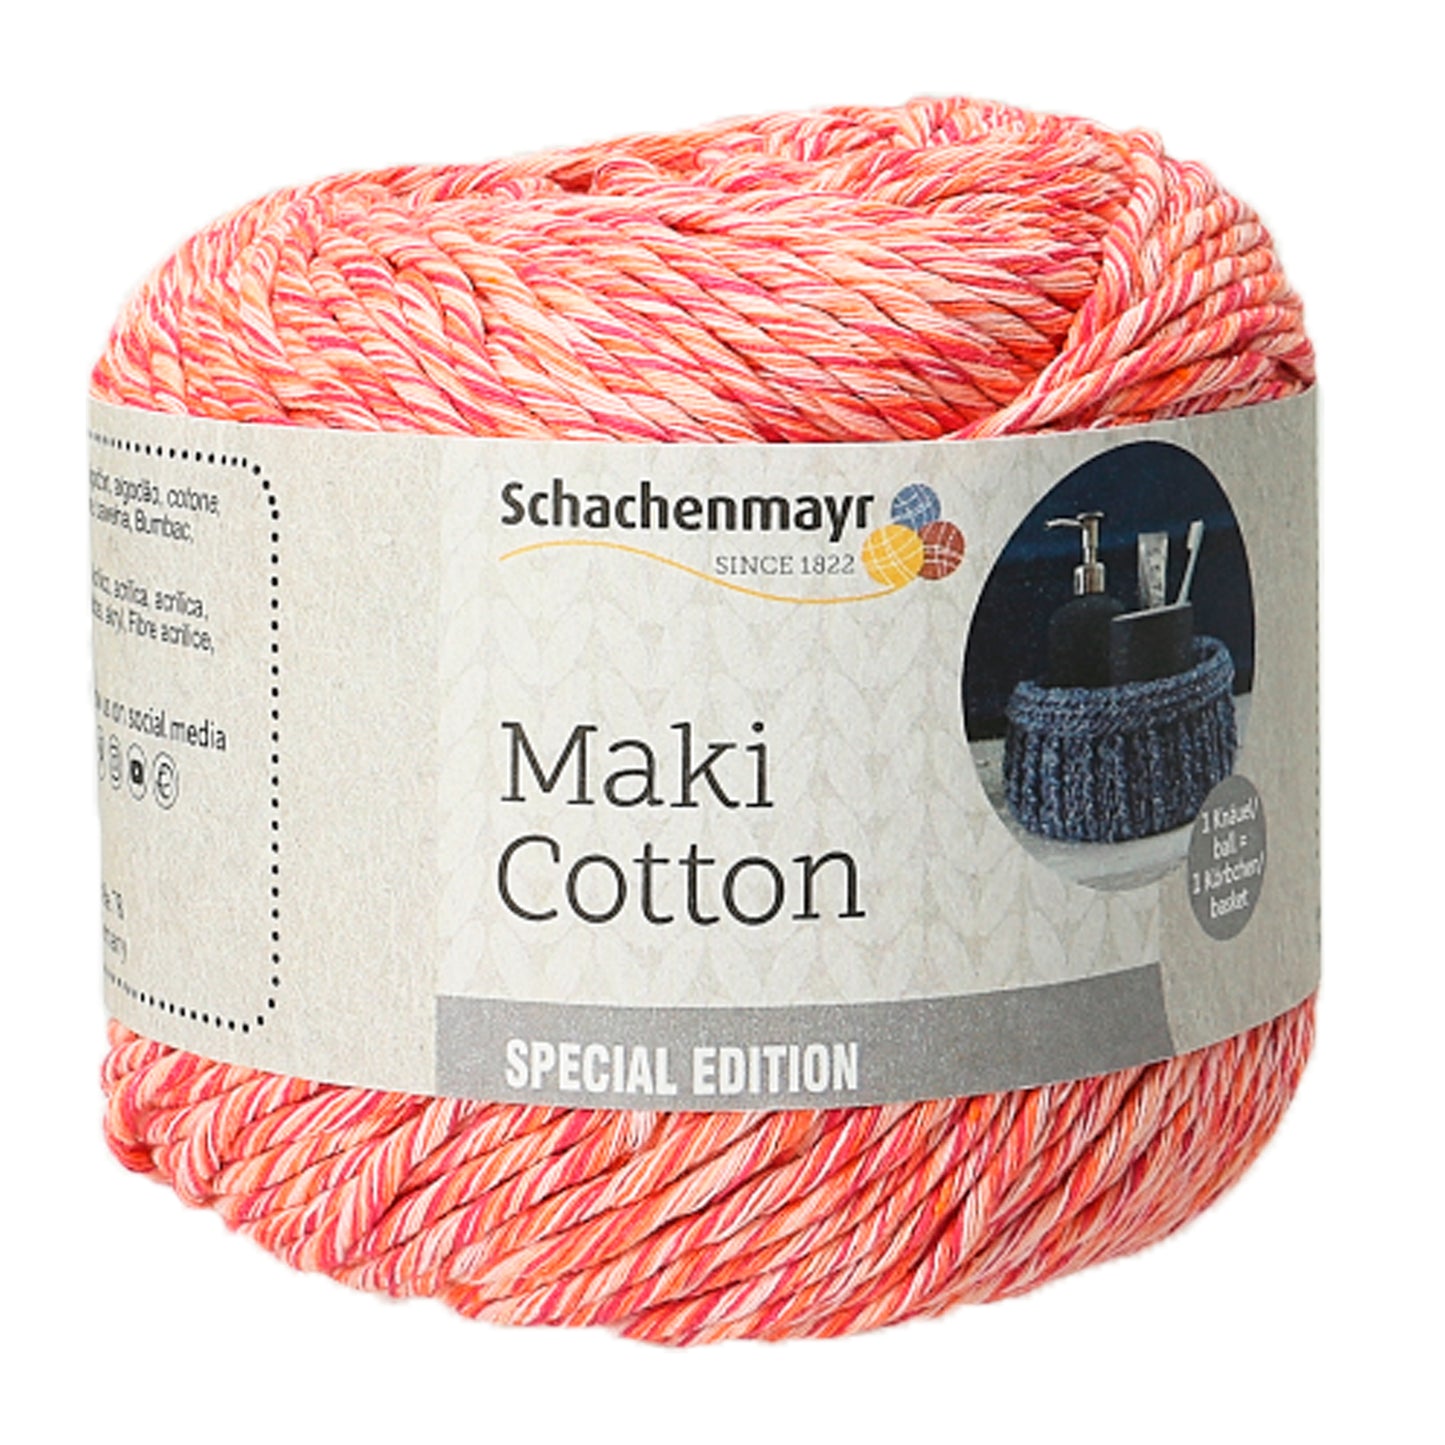 Schachenmayr Maki Cotton